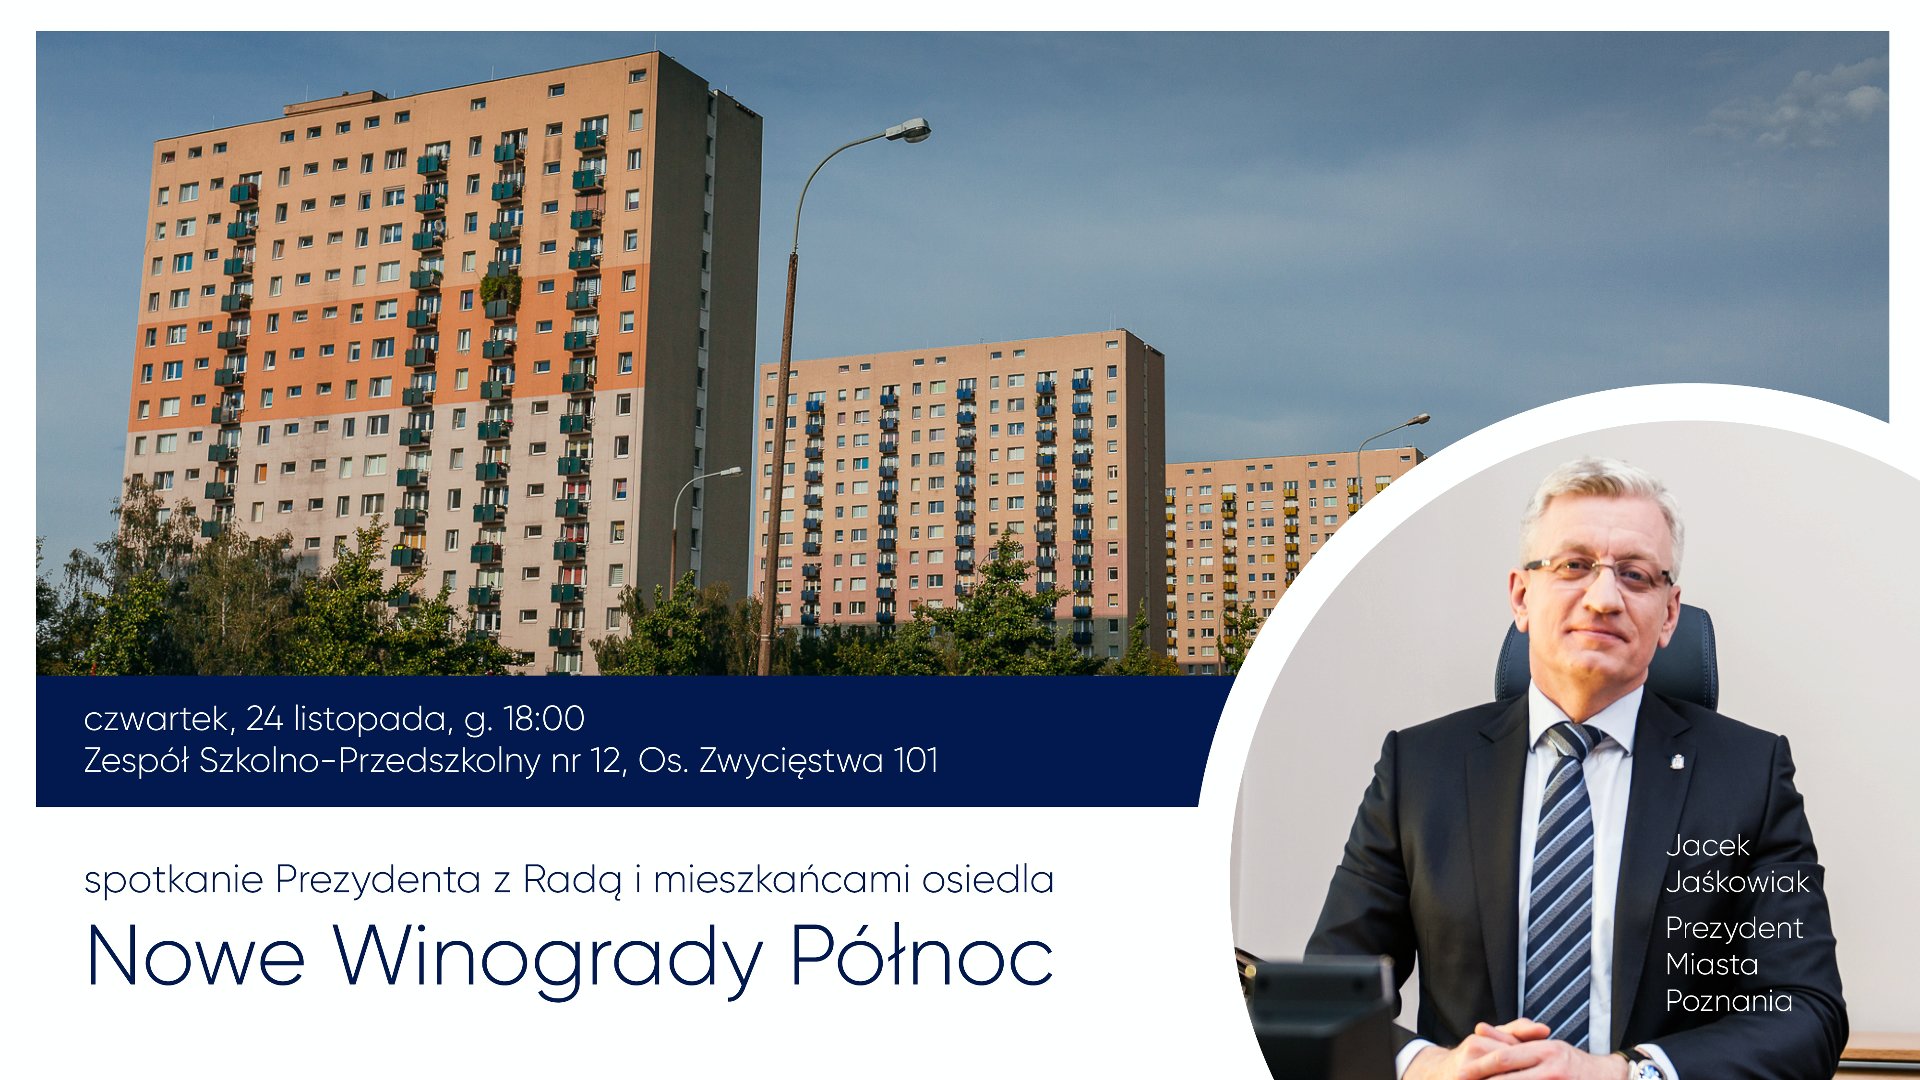 Spotkanie Prezydenta Miasta Poznania z mieszkańcami rozpocznie się o godz. 18.00